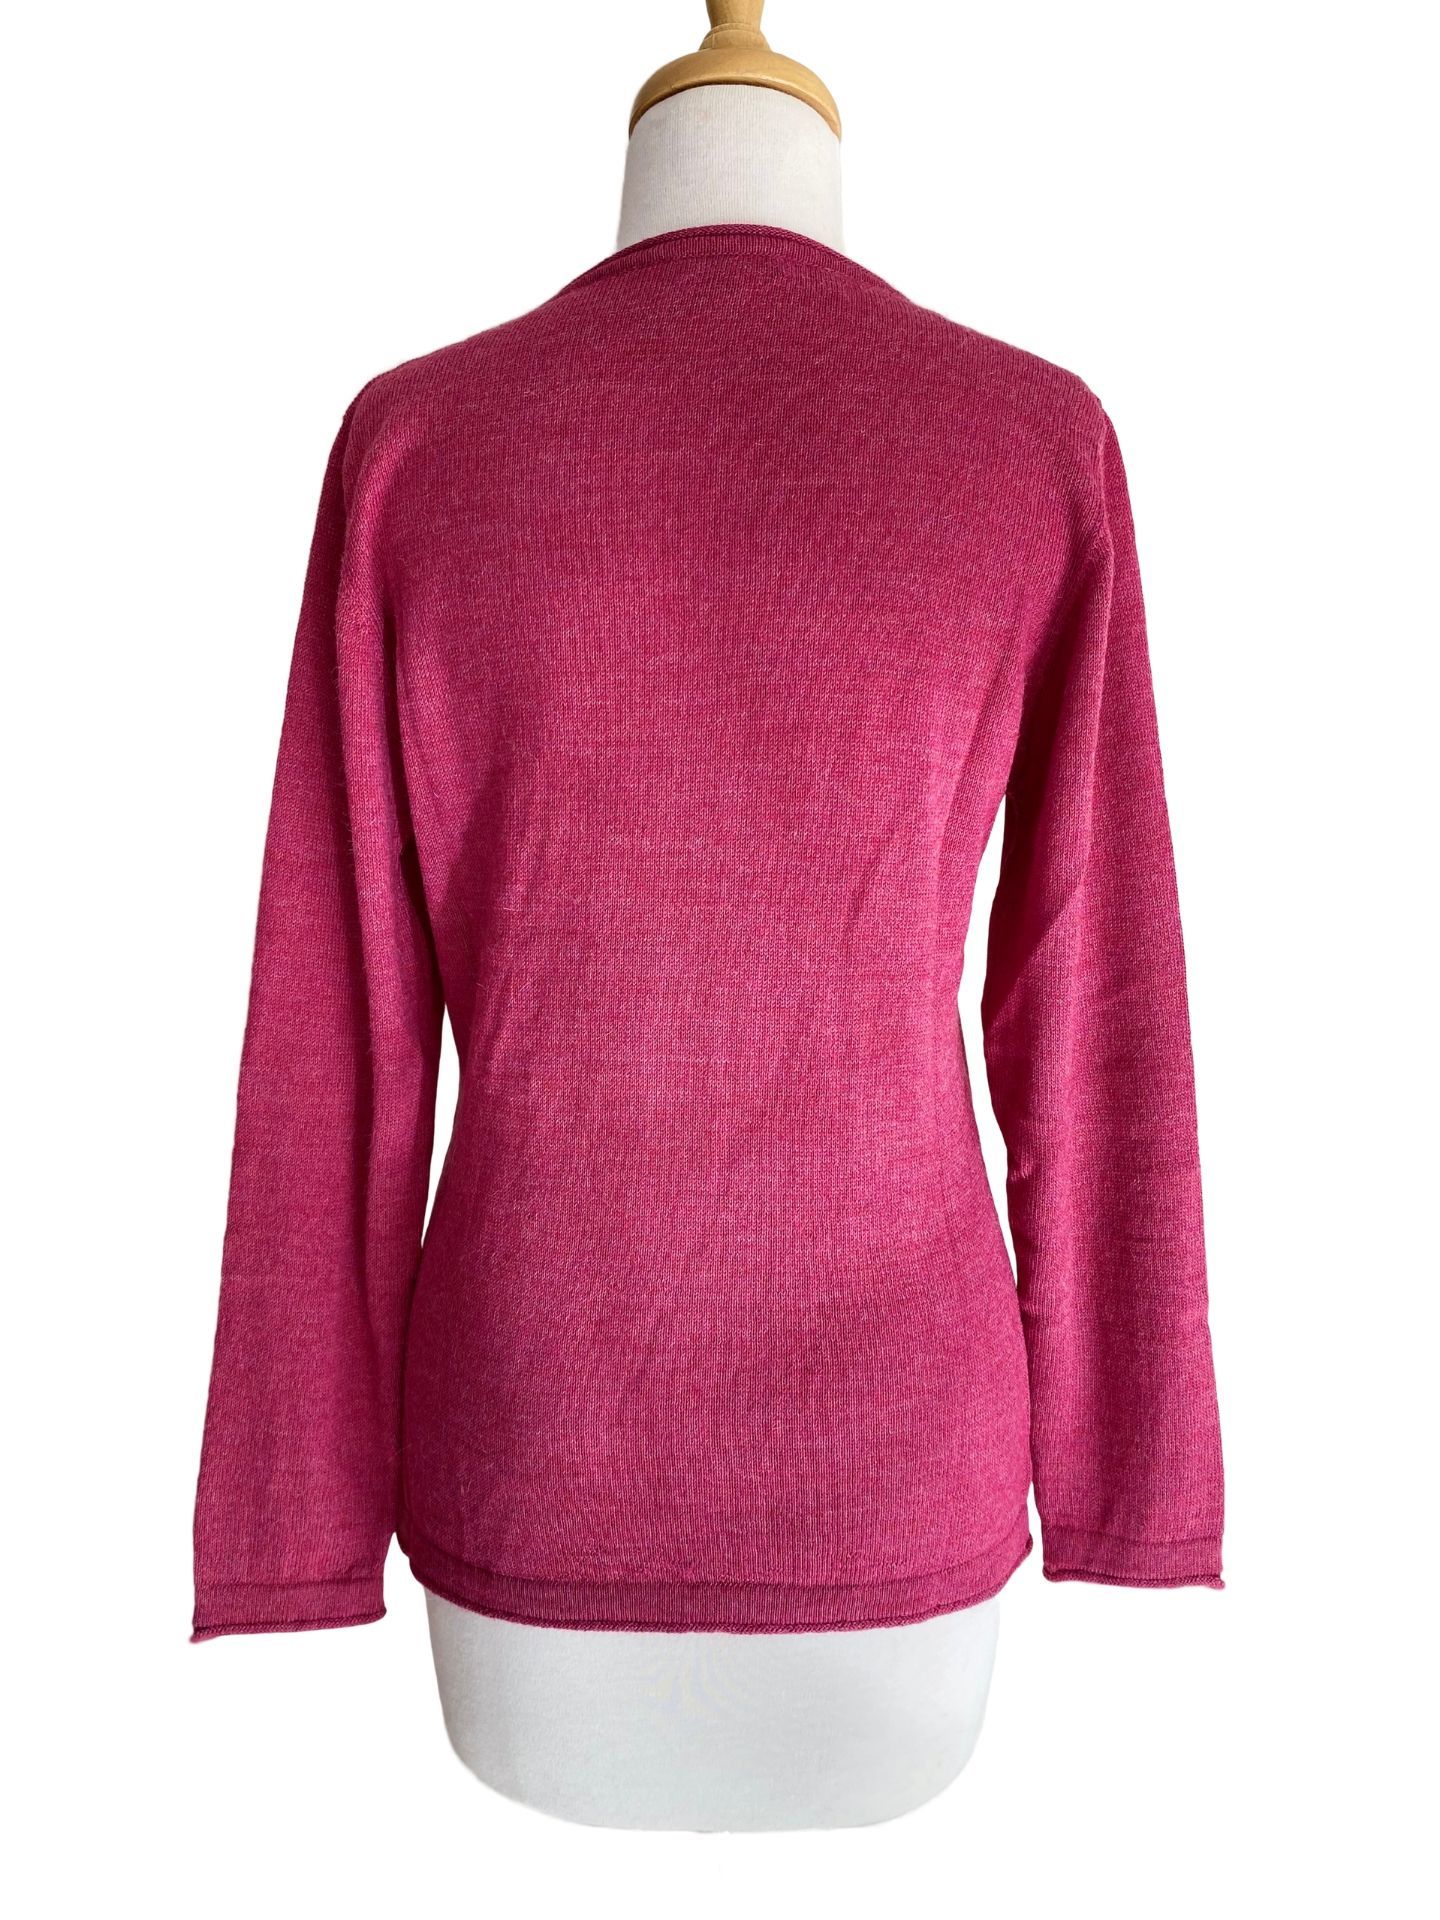 Briella Sweater Rose Pink - 2